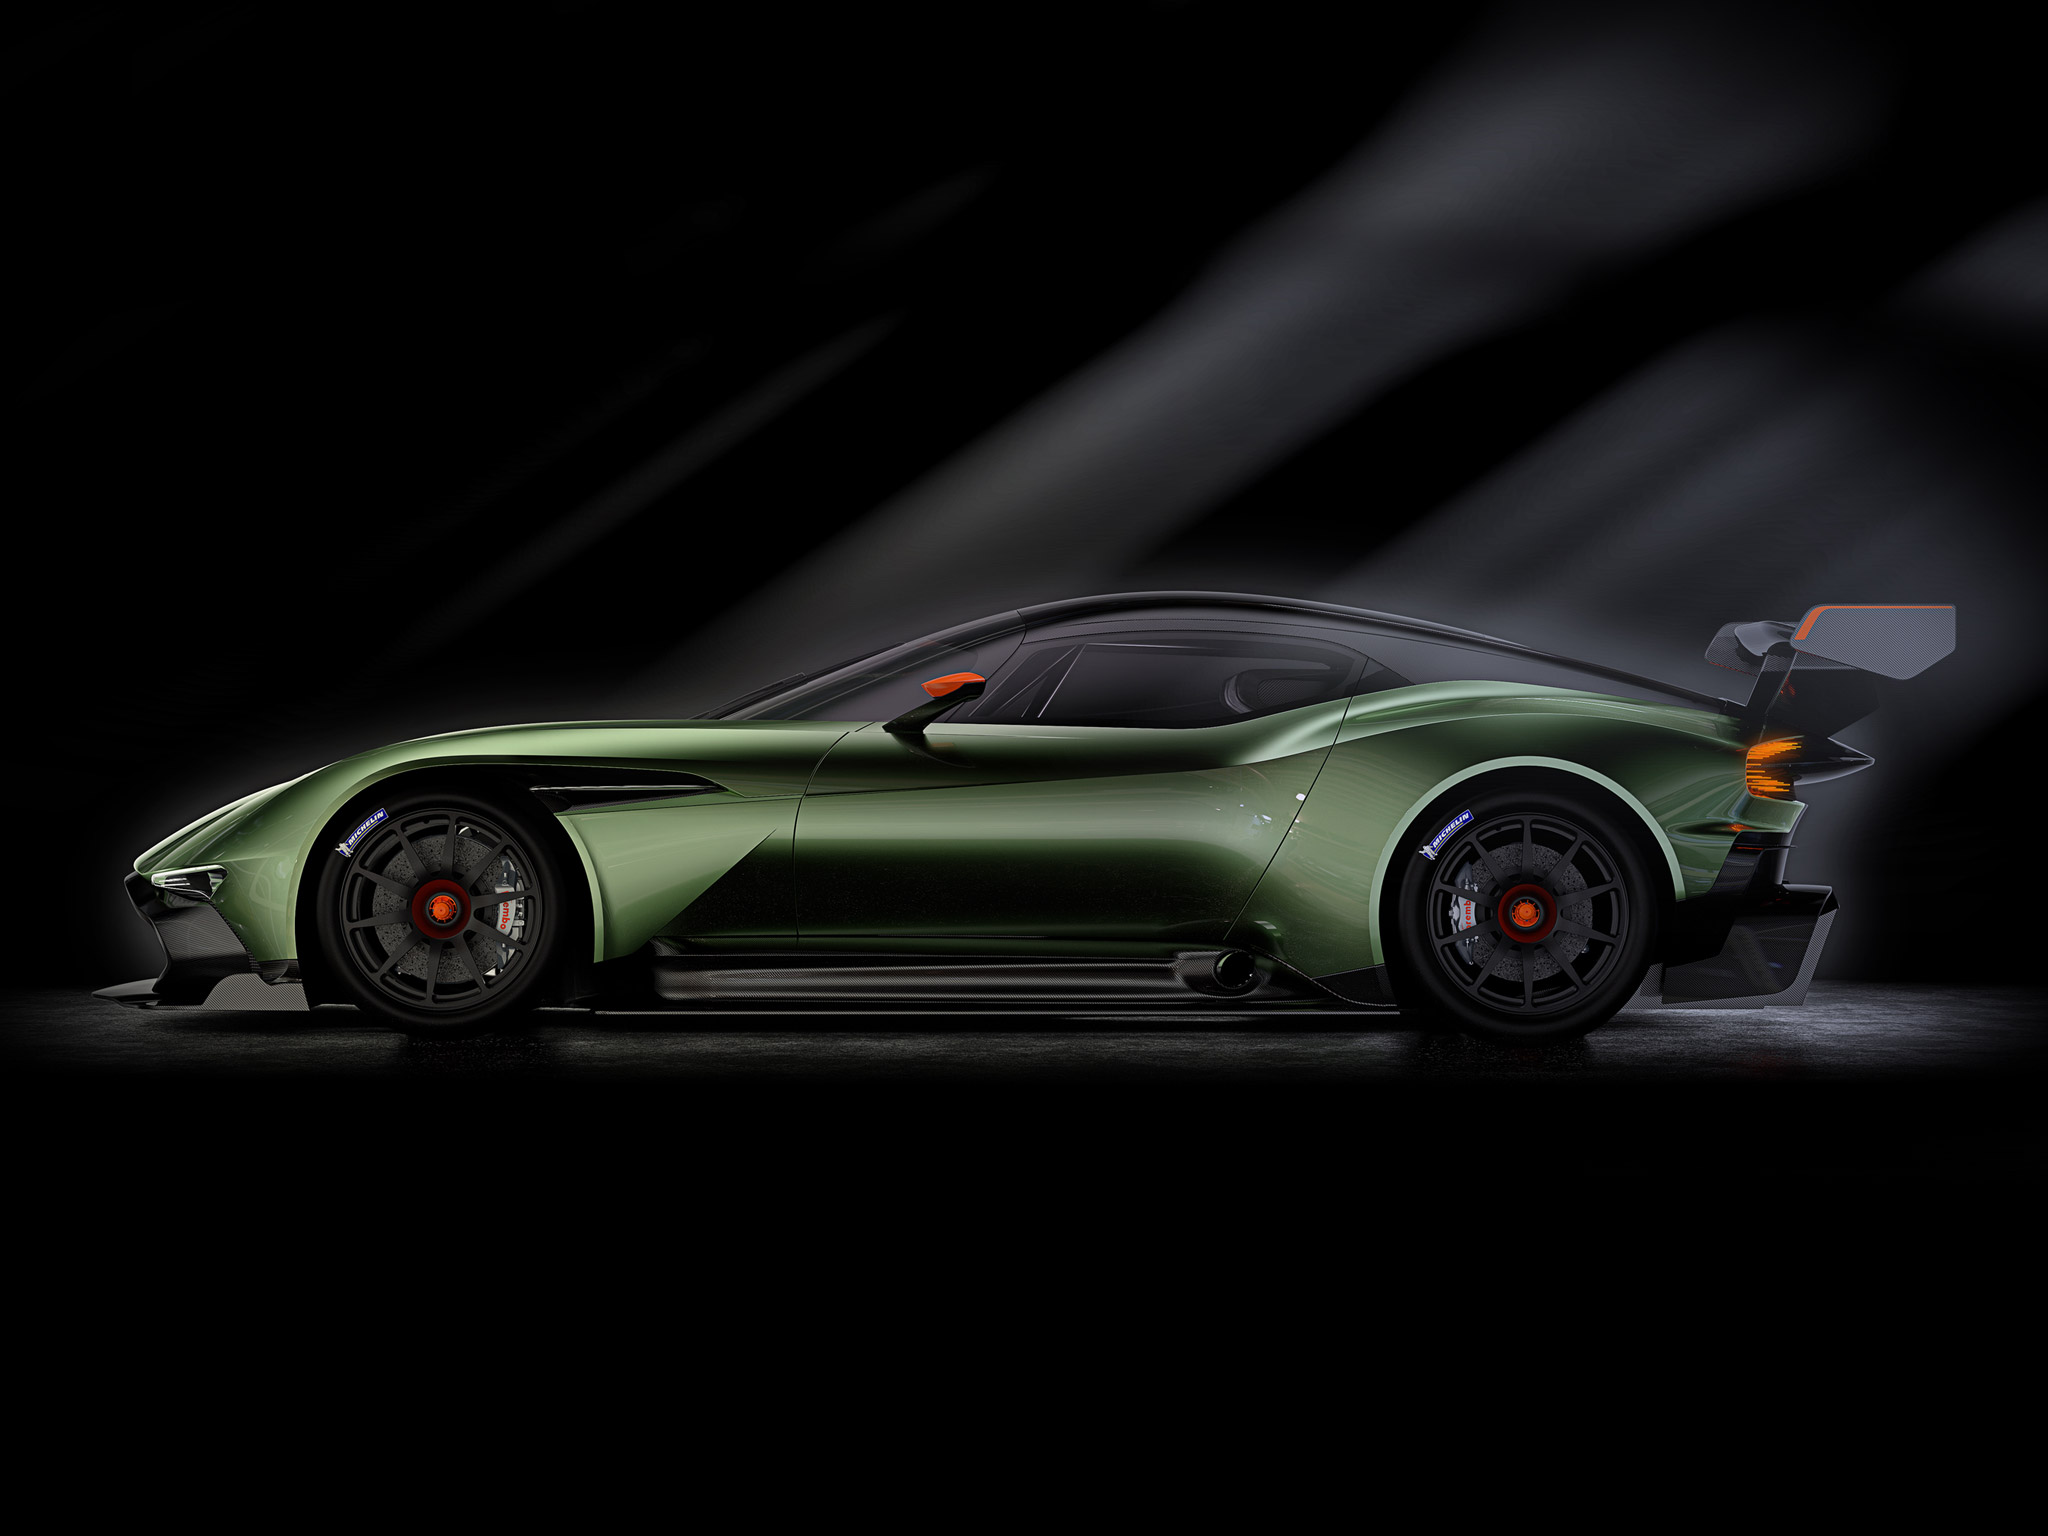  2016 Aston Martin Vulcan= Wallpaper.